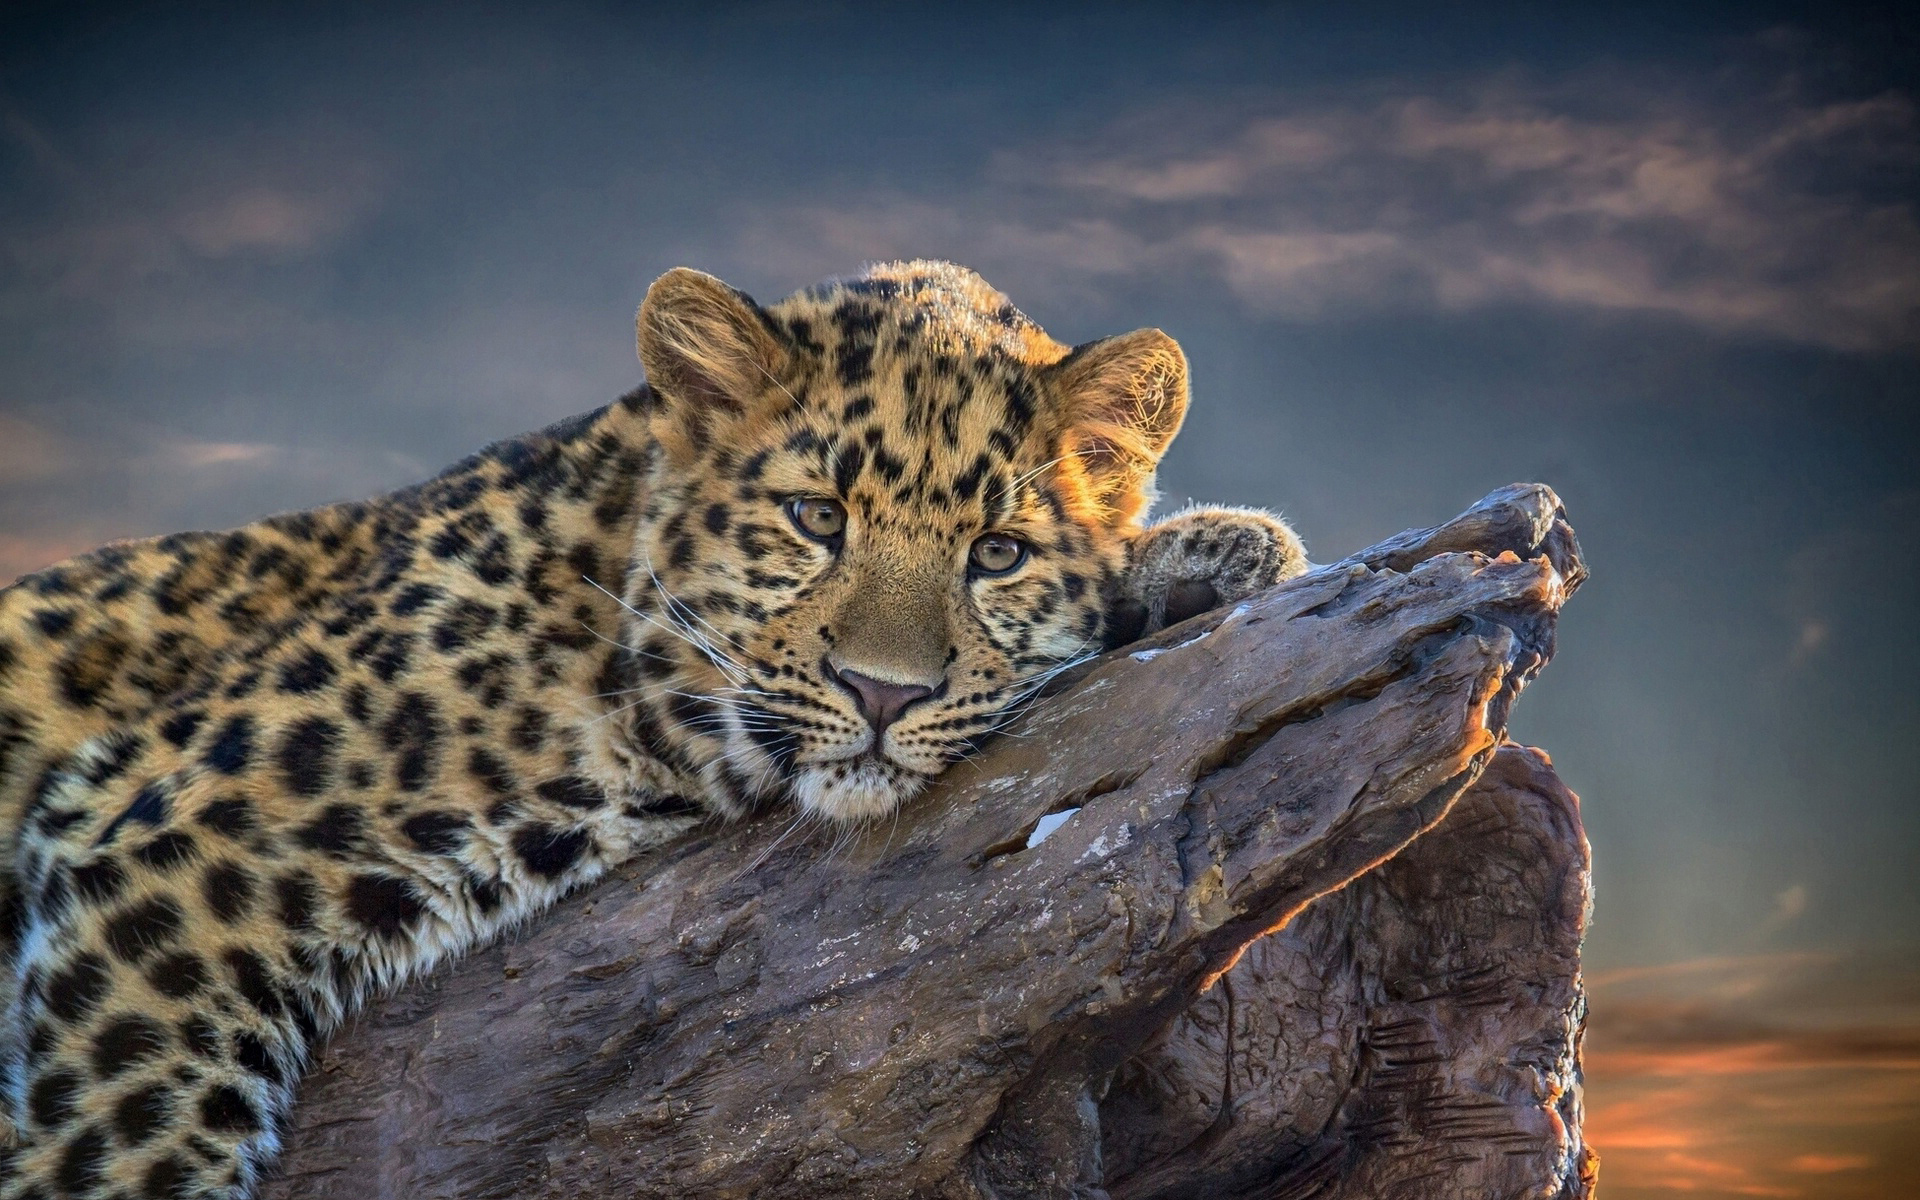 Leopard relaxing